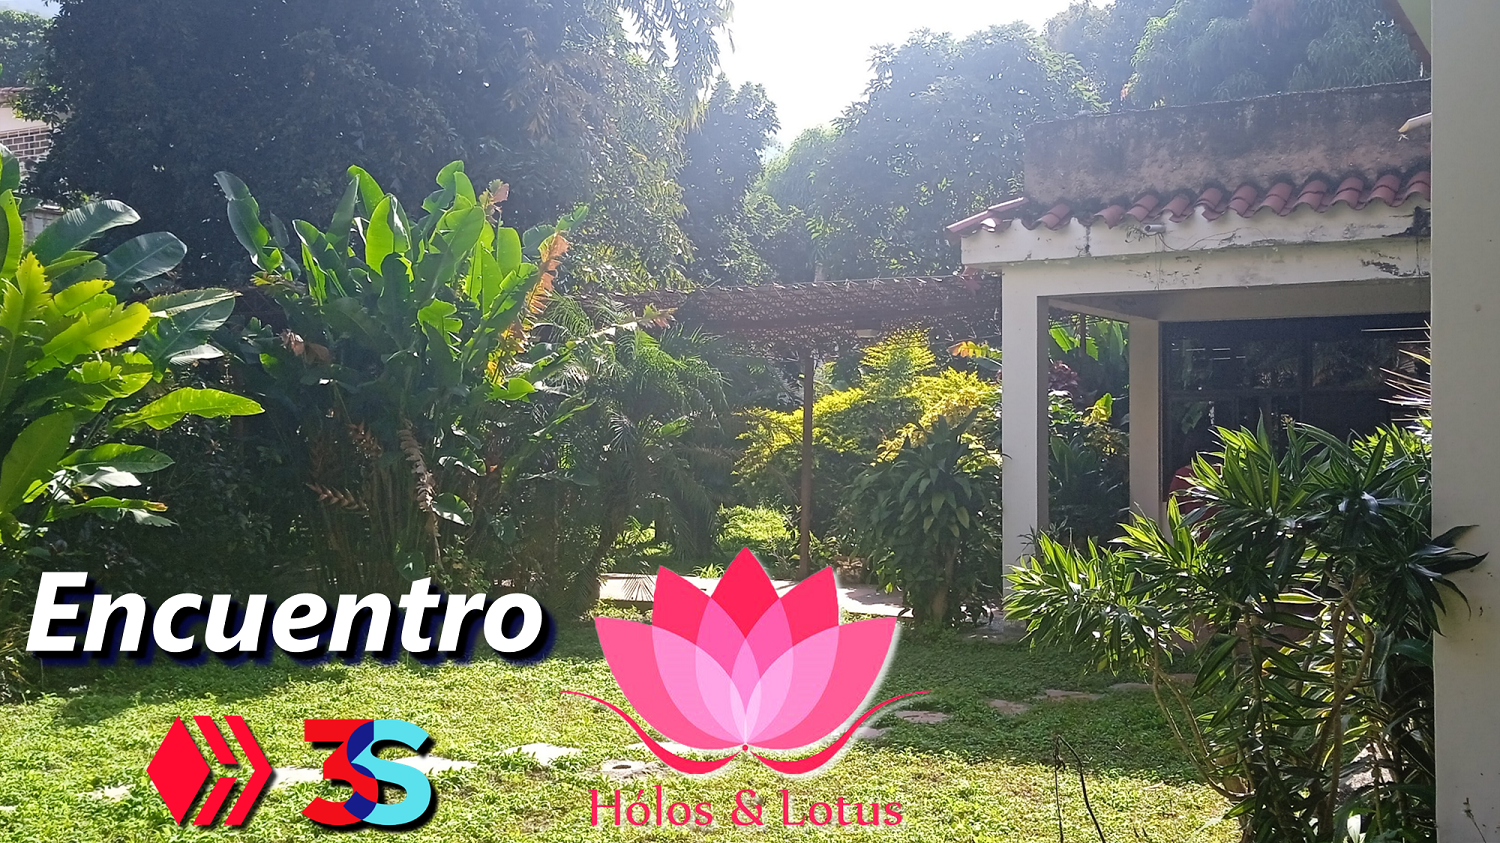 Encuentro Holos Lotus Hive Blog Bienestar Holistico Espiritual acont Comunidad Web 3.png